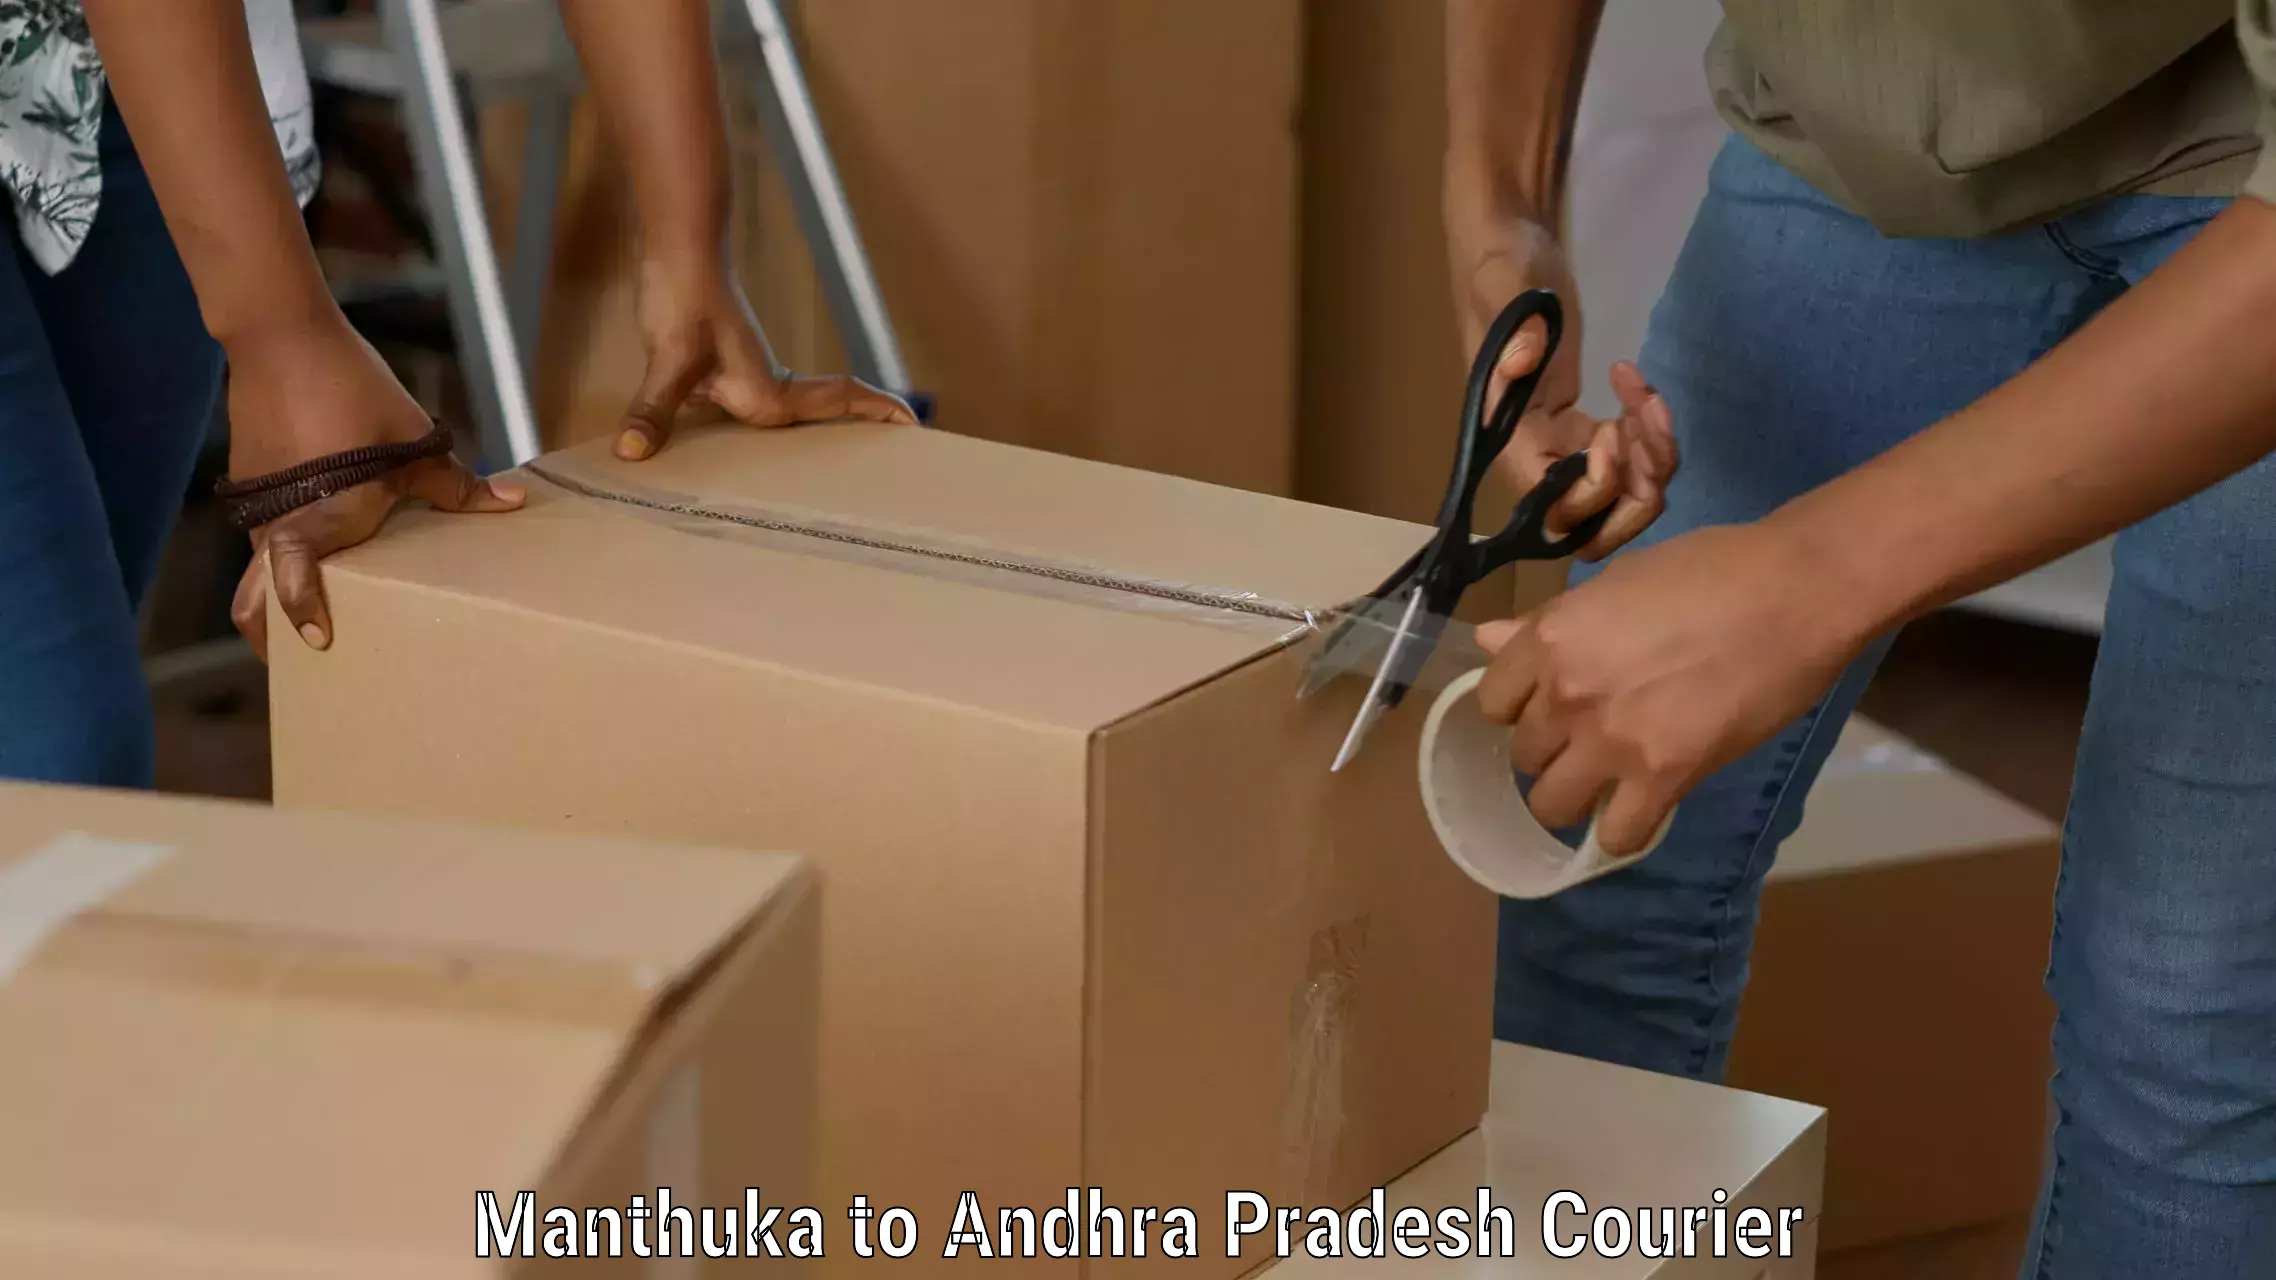 Courier service comparison Manthuka to Penugonda